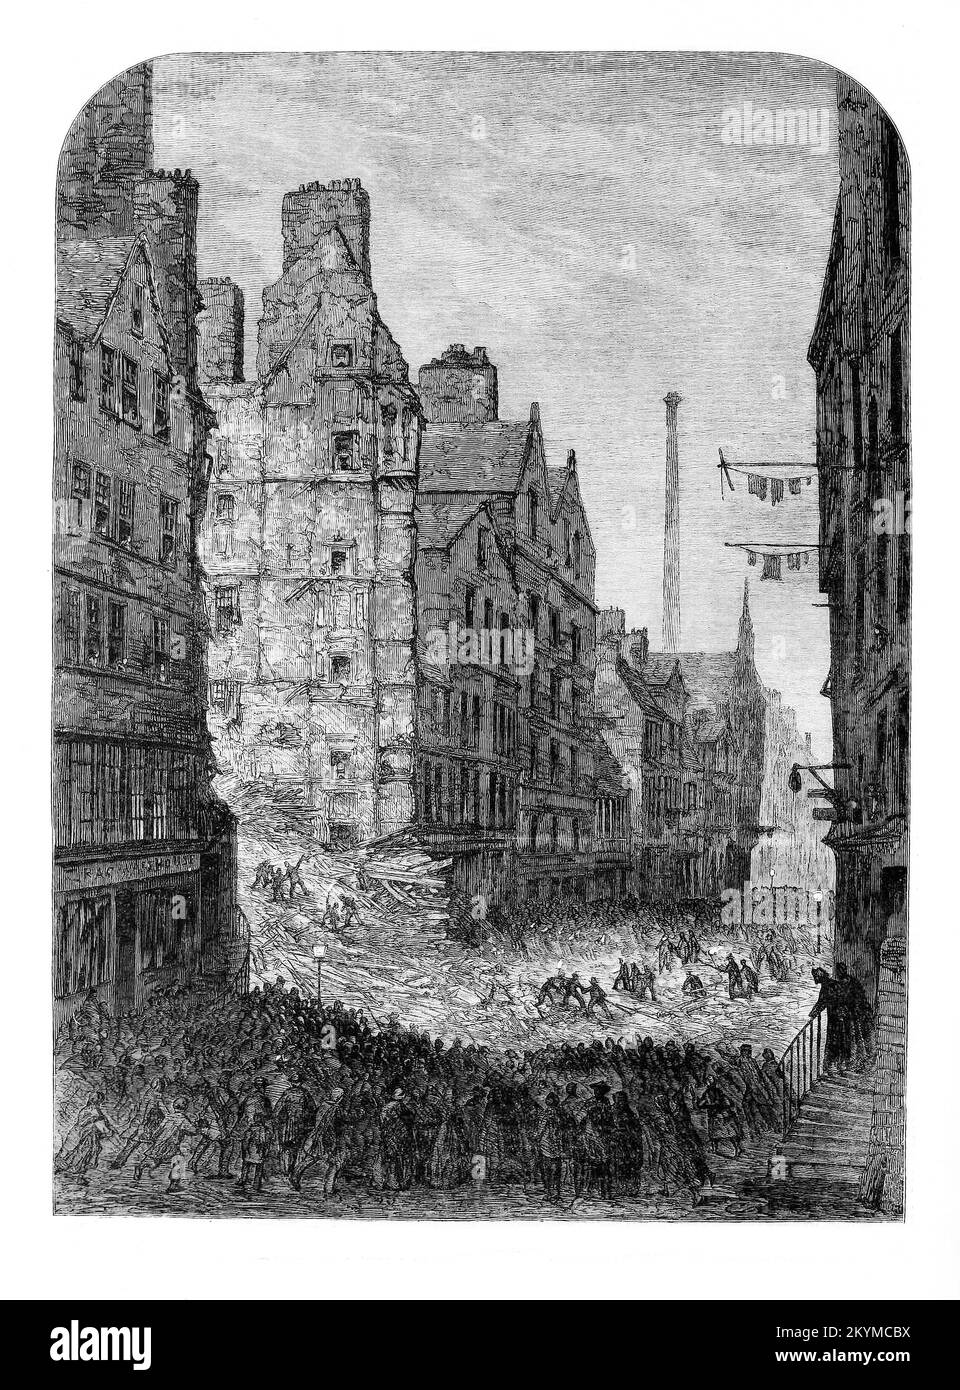 Der Zusammenbruch eines Edinburgh Mietshauses mit Todesopfern im November 1861. Von 77 Bewohnern starben oder starben 35 im Krankenhaus an ihren Verletzungen. Das 250 Jahre alte siebenstöckige Gebäude bestand größtenteils aus Holz, das in dieser verhängnisvollen Nacht gestürzt wurde. Es lag im Herzen der dicht besiedelten Altstadt von Edinburgh, an der Nordseite der High Street. Das City Improvement Act wurde 1867 verabschiedet. Und gegen Ende des 19.. Jahrhunderts war ein Großteil der mittelalterlichen Wohnungen der Altstadt verschwunden. Stockfoto